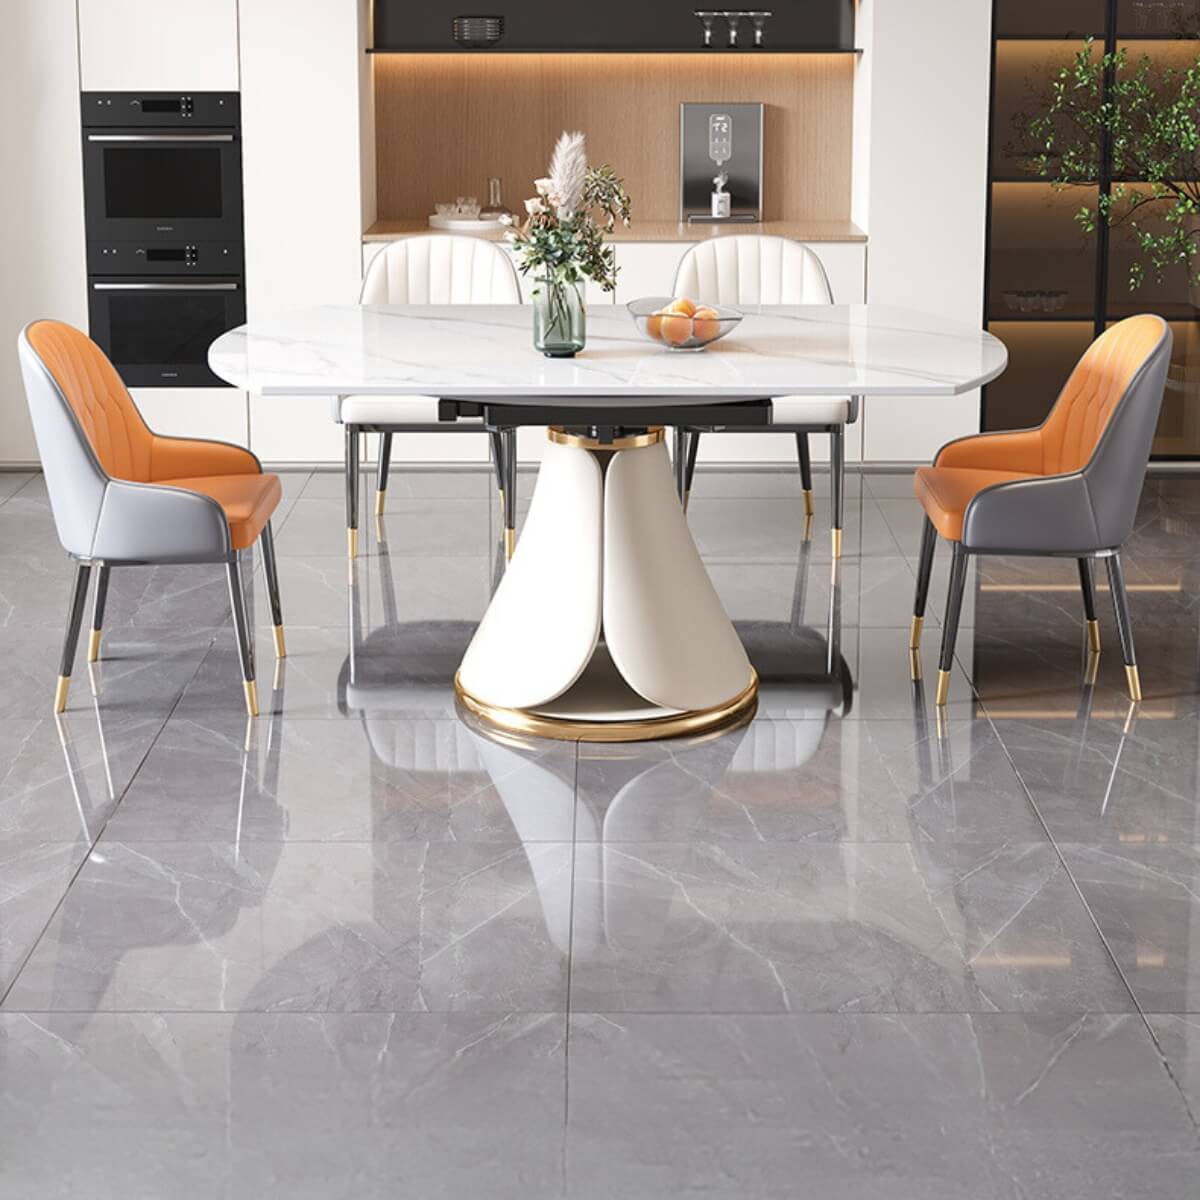 Tundra-M332-Premium-Round-Rotating-Dining-Table-elegant-interior-Australia-4